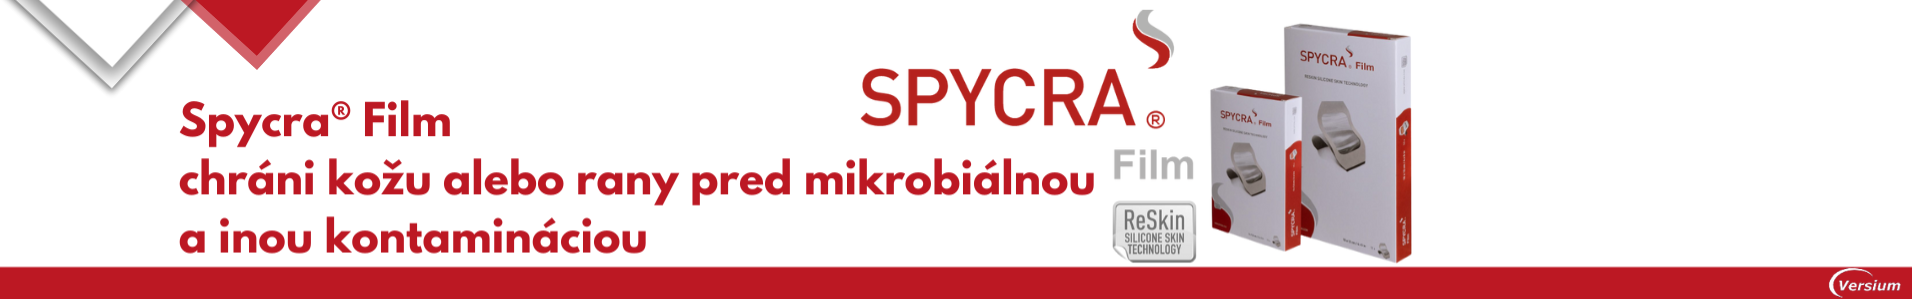 Spycra film 